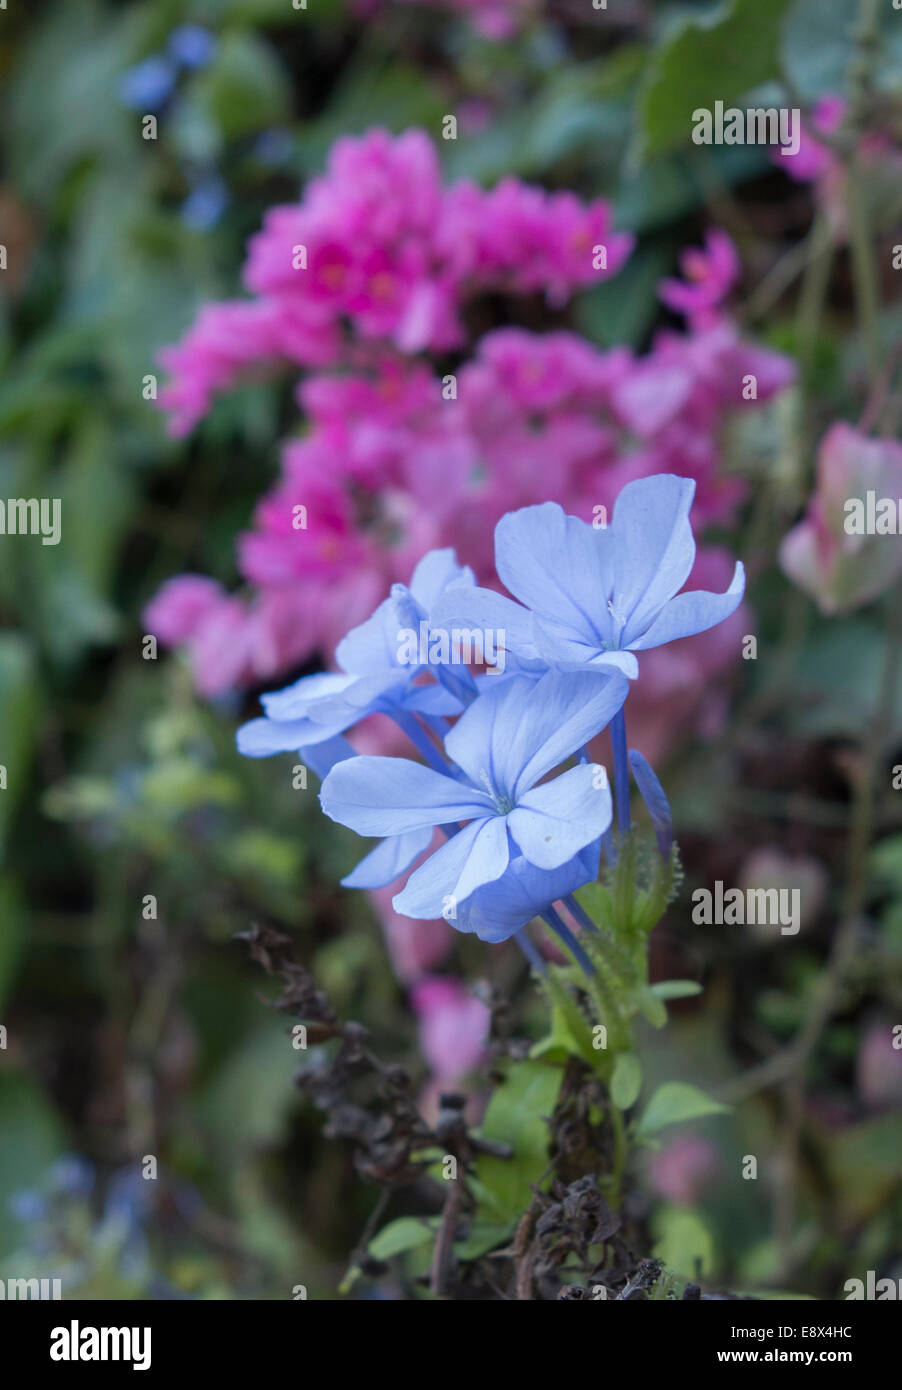 Close-up of a Plumbago Flower, Plumbago auriculata. Stock Photo